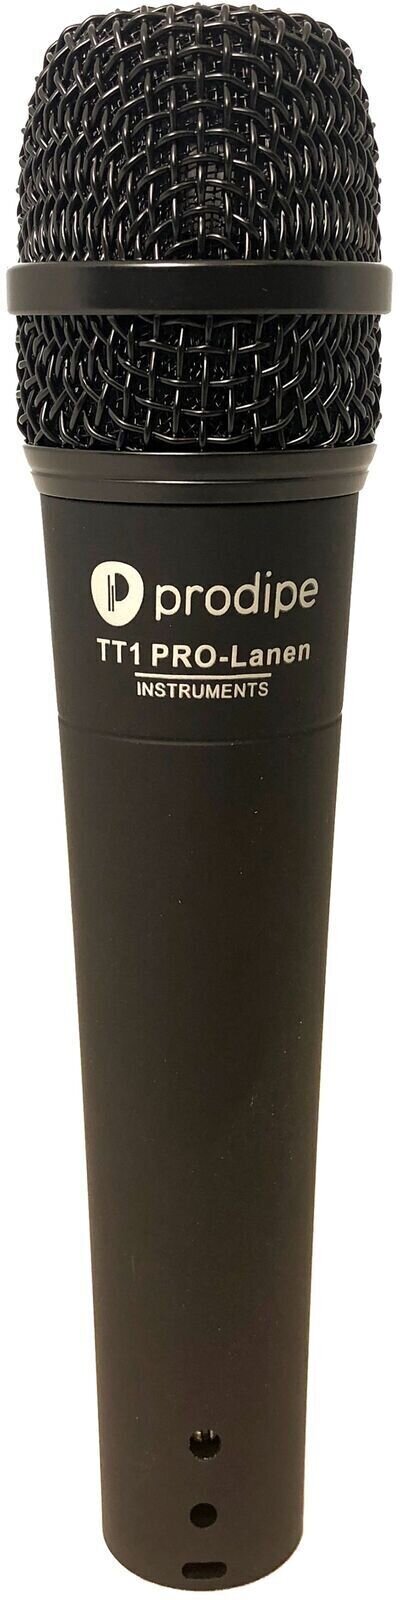 Micrófono dinámico para instrumentos Prodipe TT1 Pro-Lanen Inst Micrófono dinámico para instrumentos